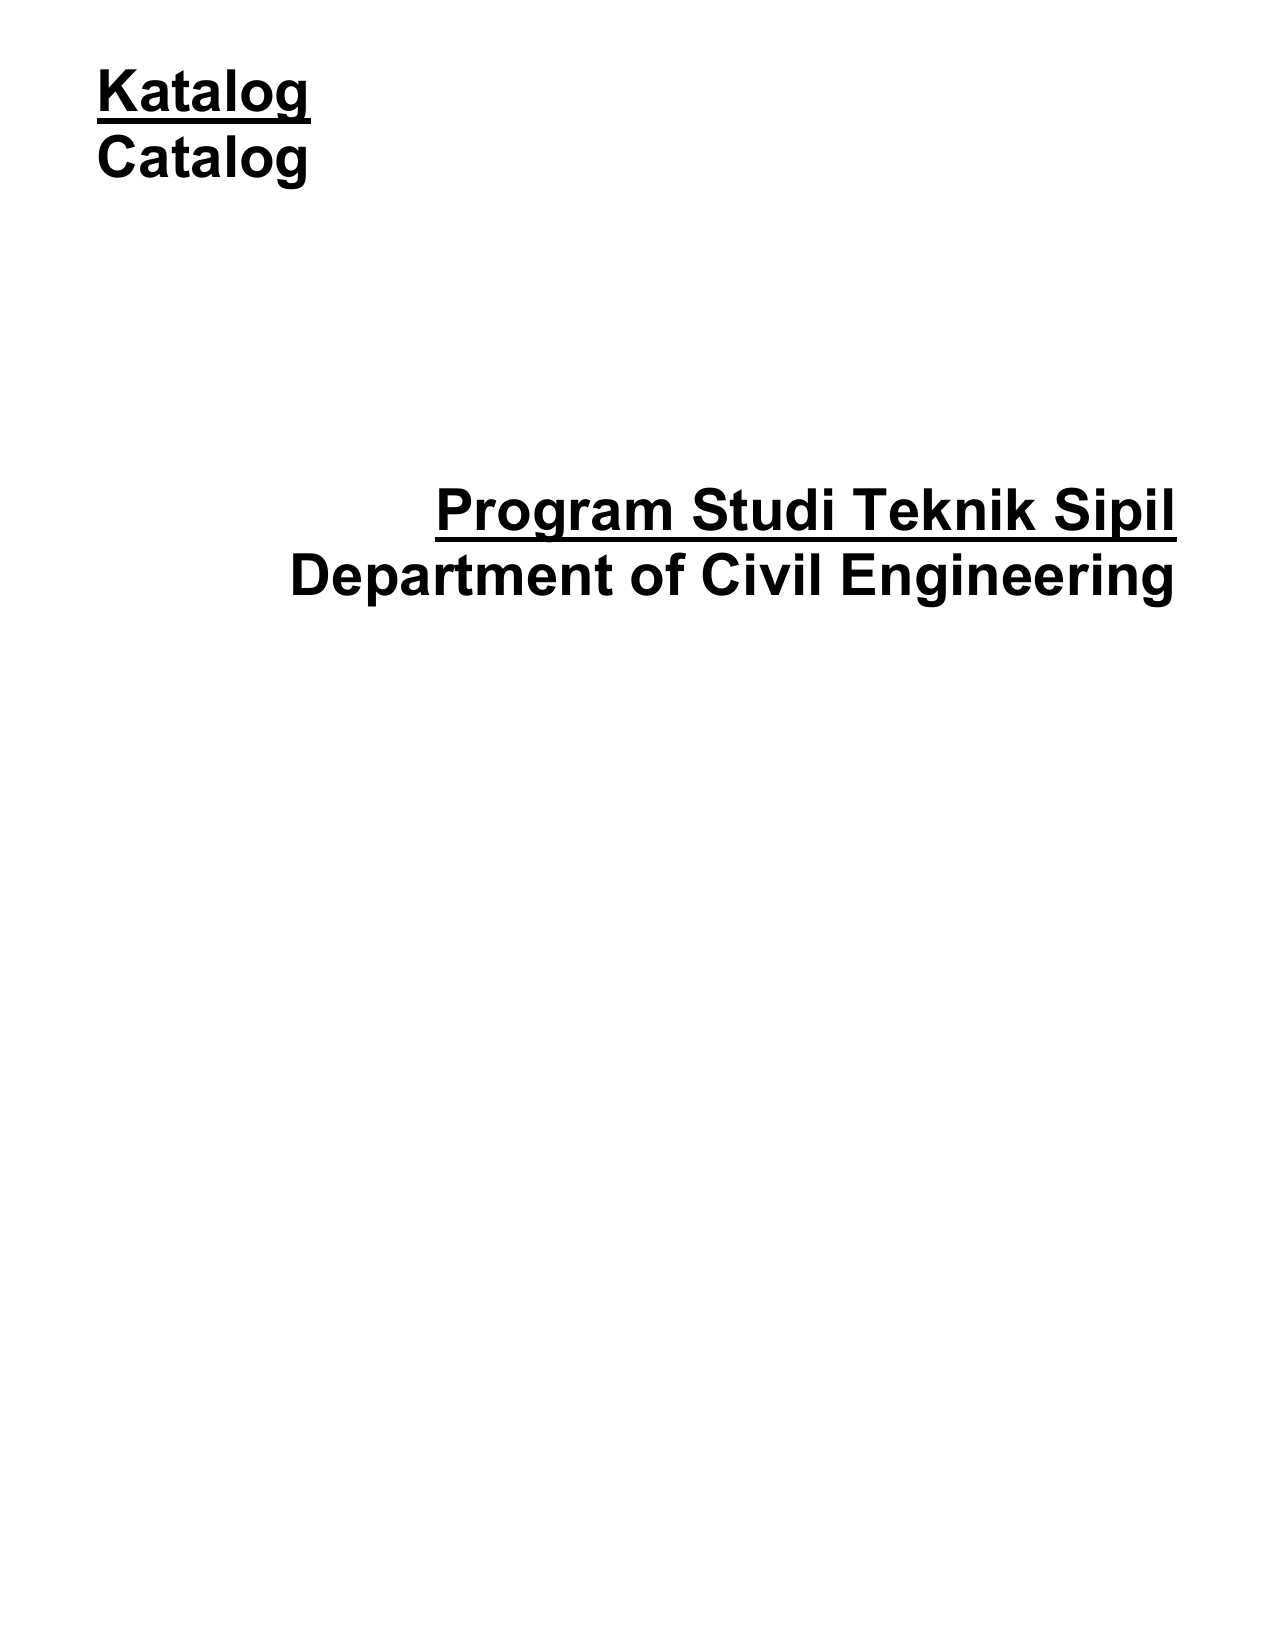 Perkembangan Program Studi The Development of the Civil Engineering Department Program Studi Teknik Sipil Fakultas Teknik Sipil dan Perencanaan